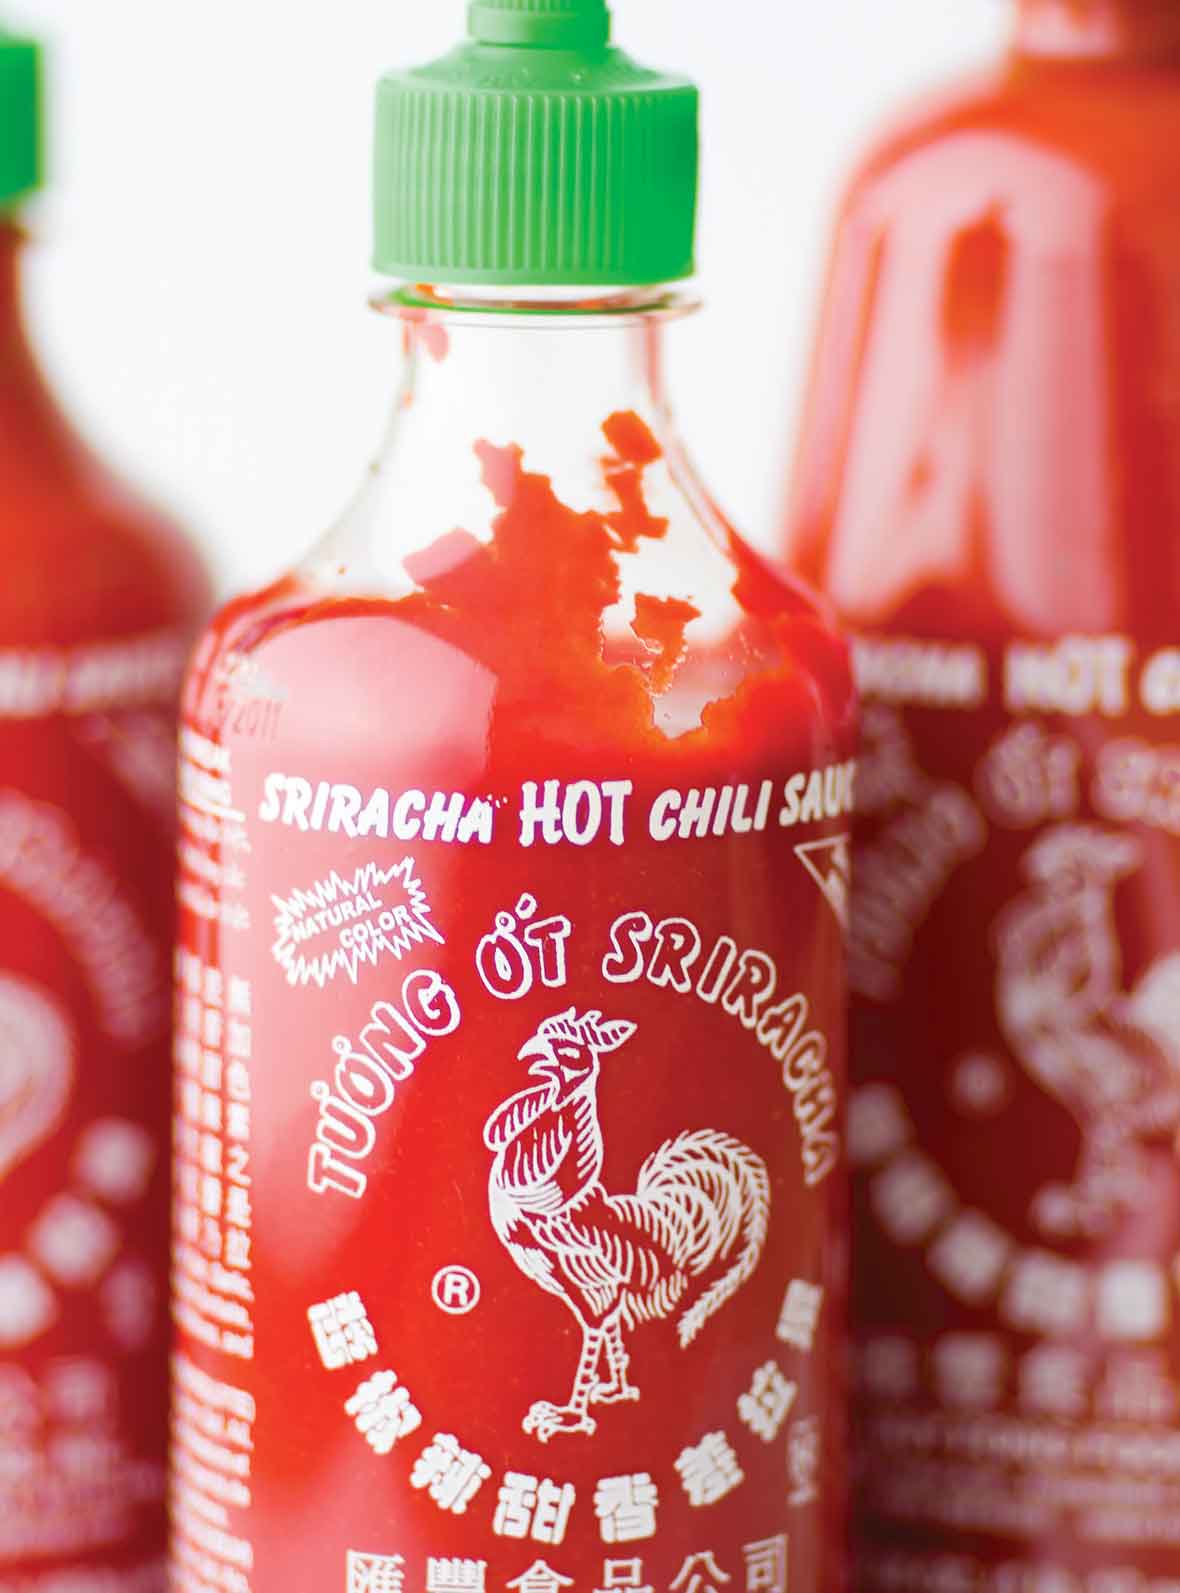 Three bottles of homemade Sriracha sauce.